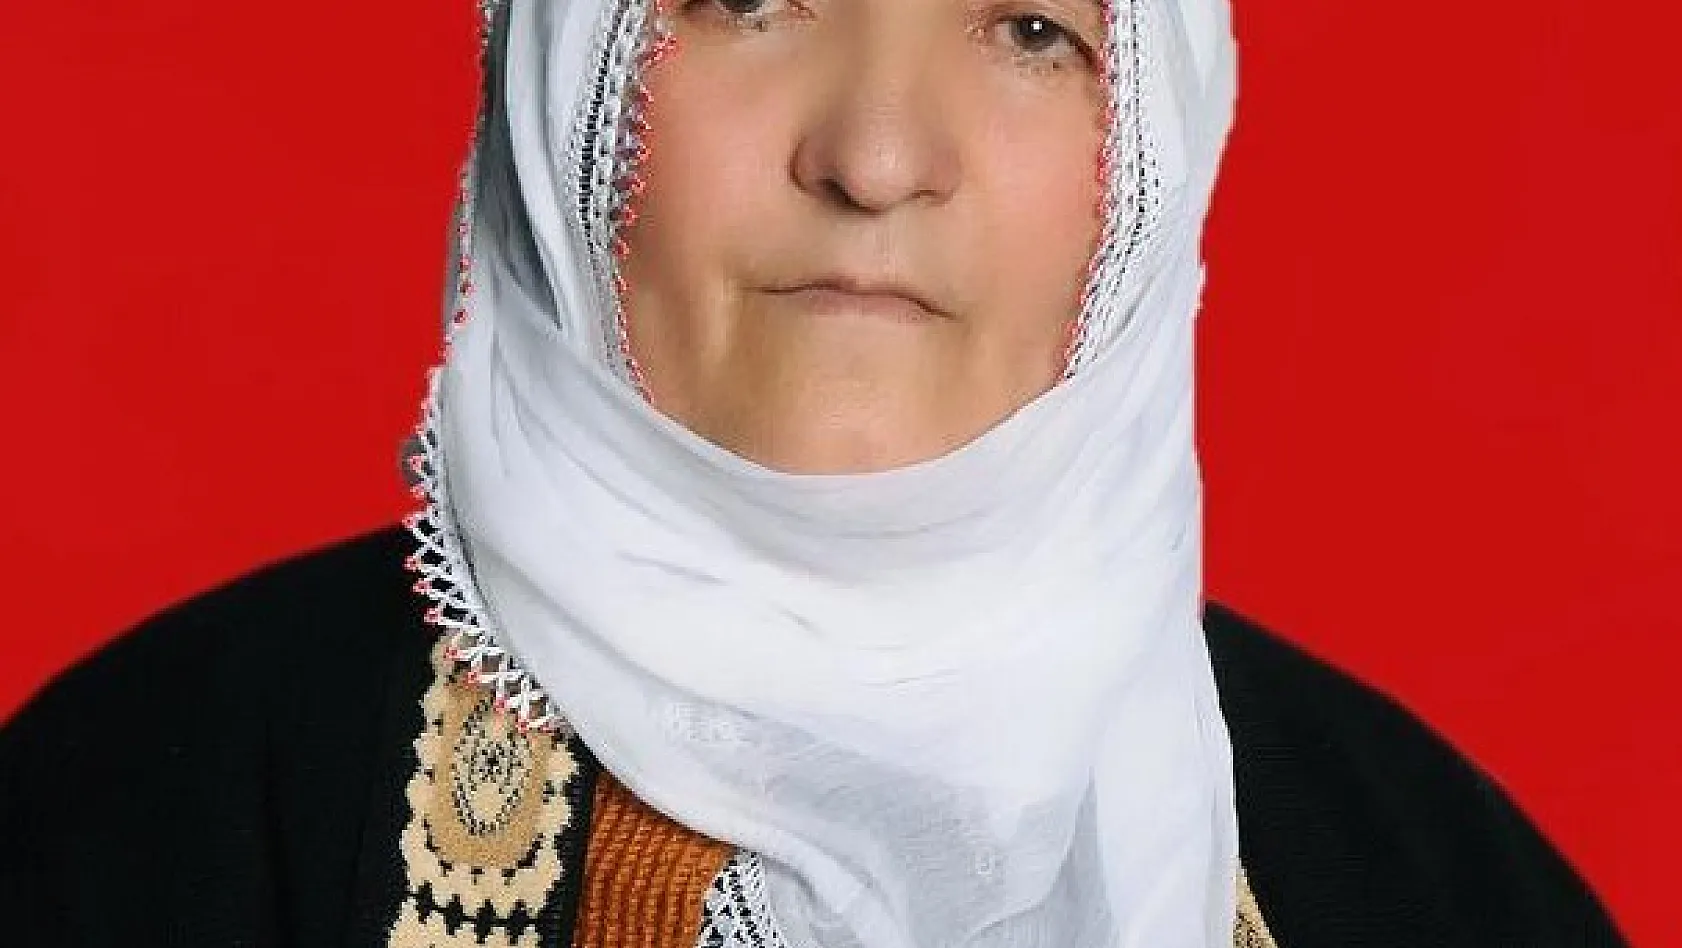 Tunceli'deki anne oğul cinayetinde 1 şüpheli tutuklandı 